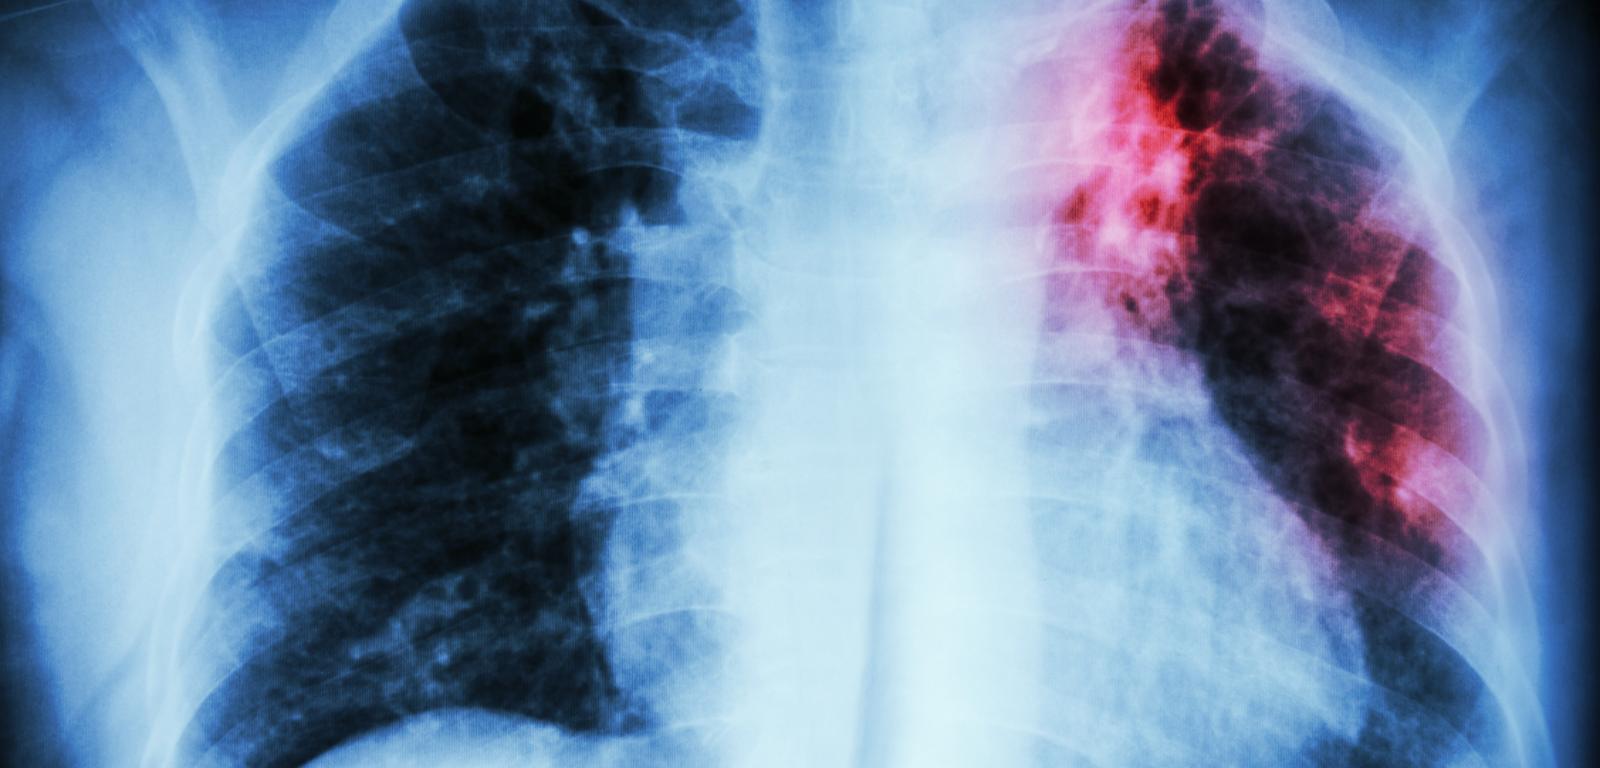 Gruźlica płuc. RTG klatki piersiowej: infiltracja śródmiąższowa w jednym górnym płucu spowodowana zakażeniem Mycobacterium tuberculosis.